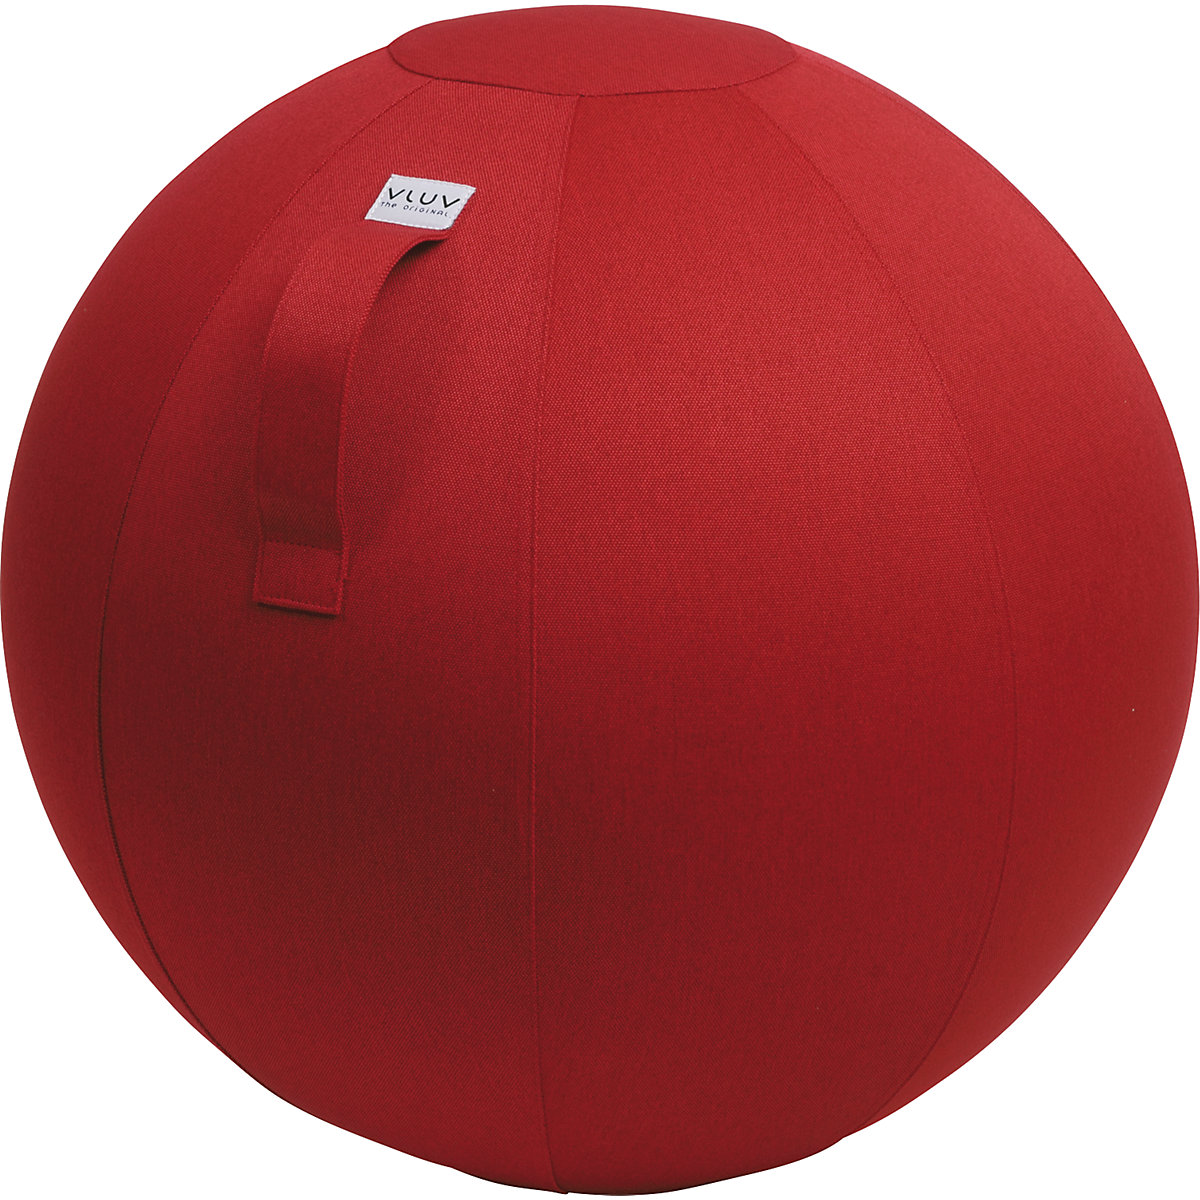 Piłka do siedzenia LEIV – VLUV, pokrowiec z tkaniny o wyglądzie płótna, 600 – 650 mm, rubinowo-czerwona-9